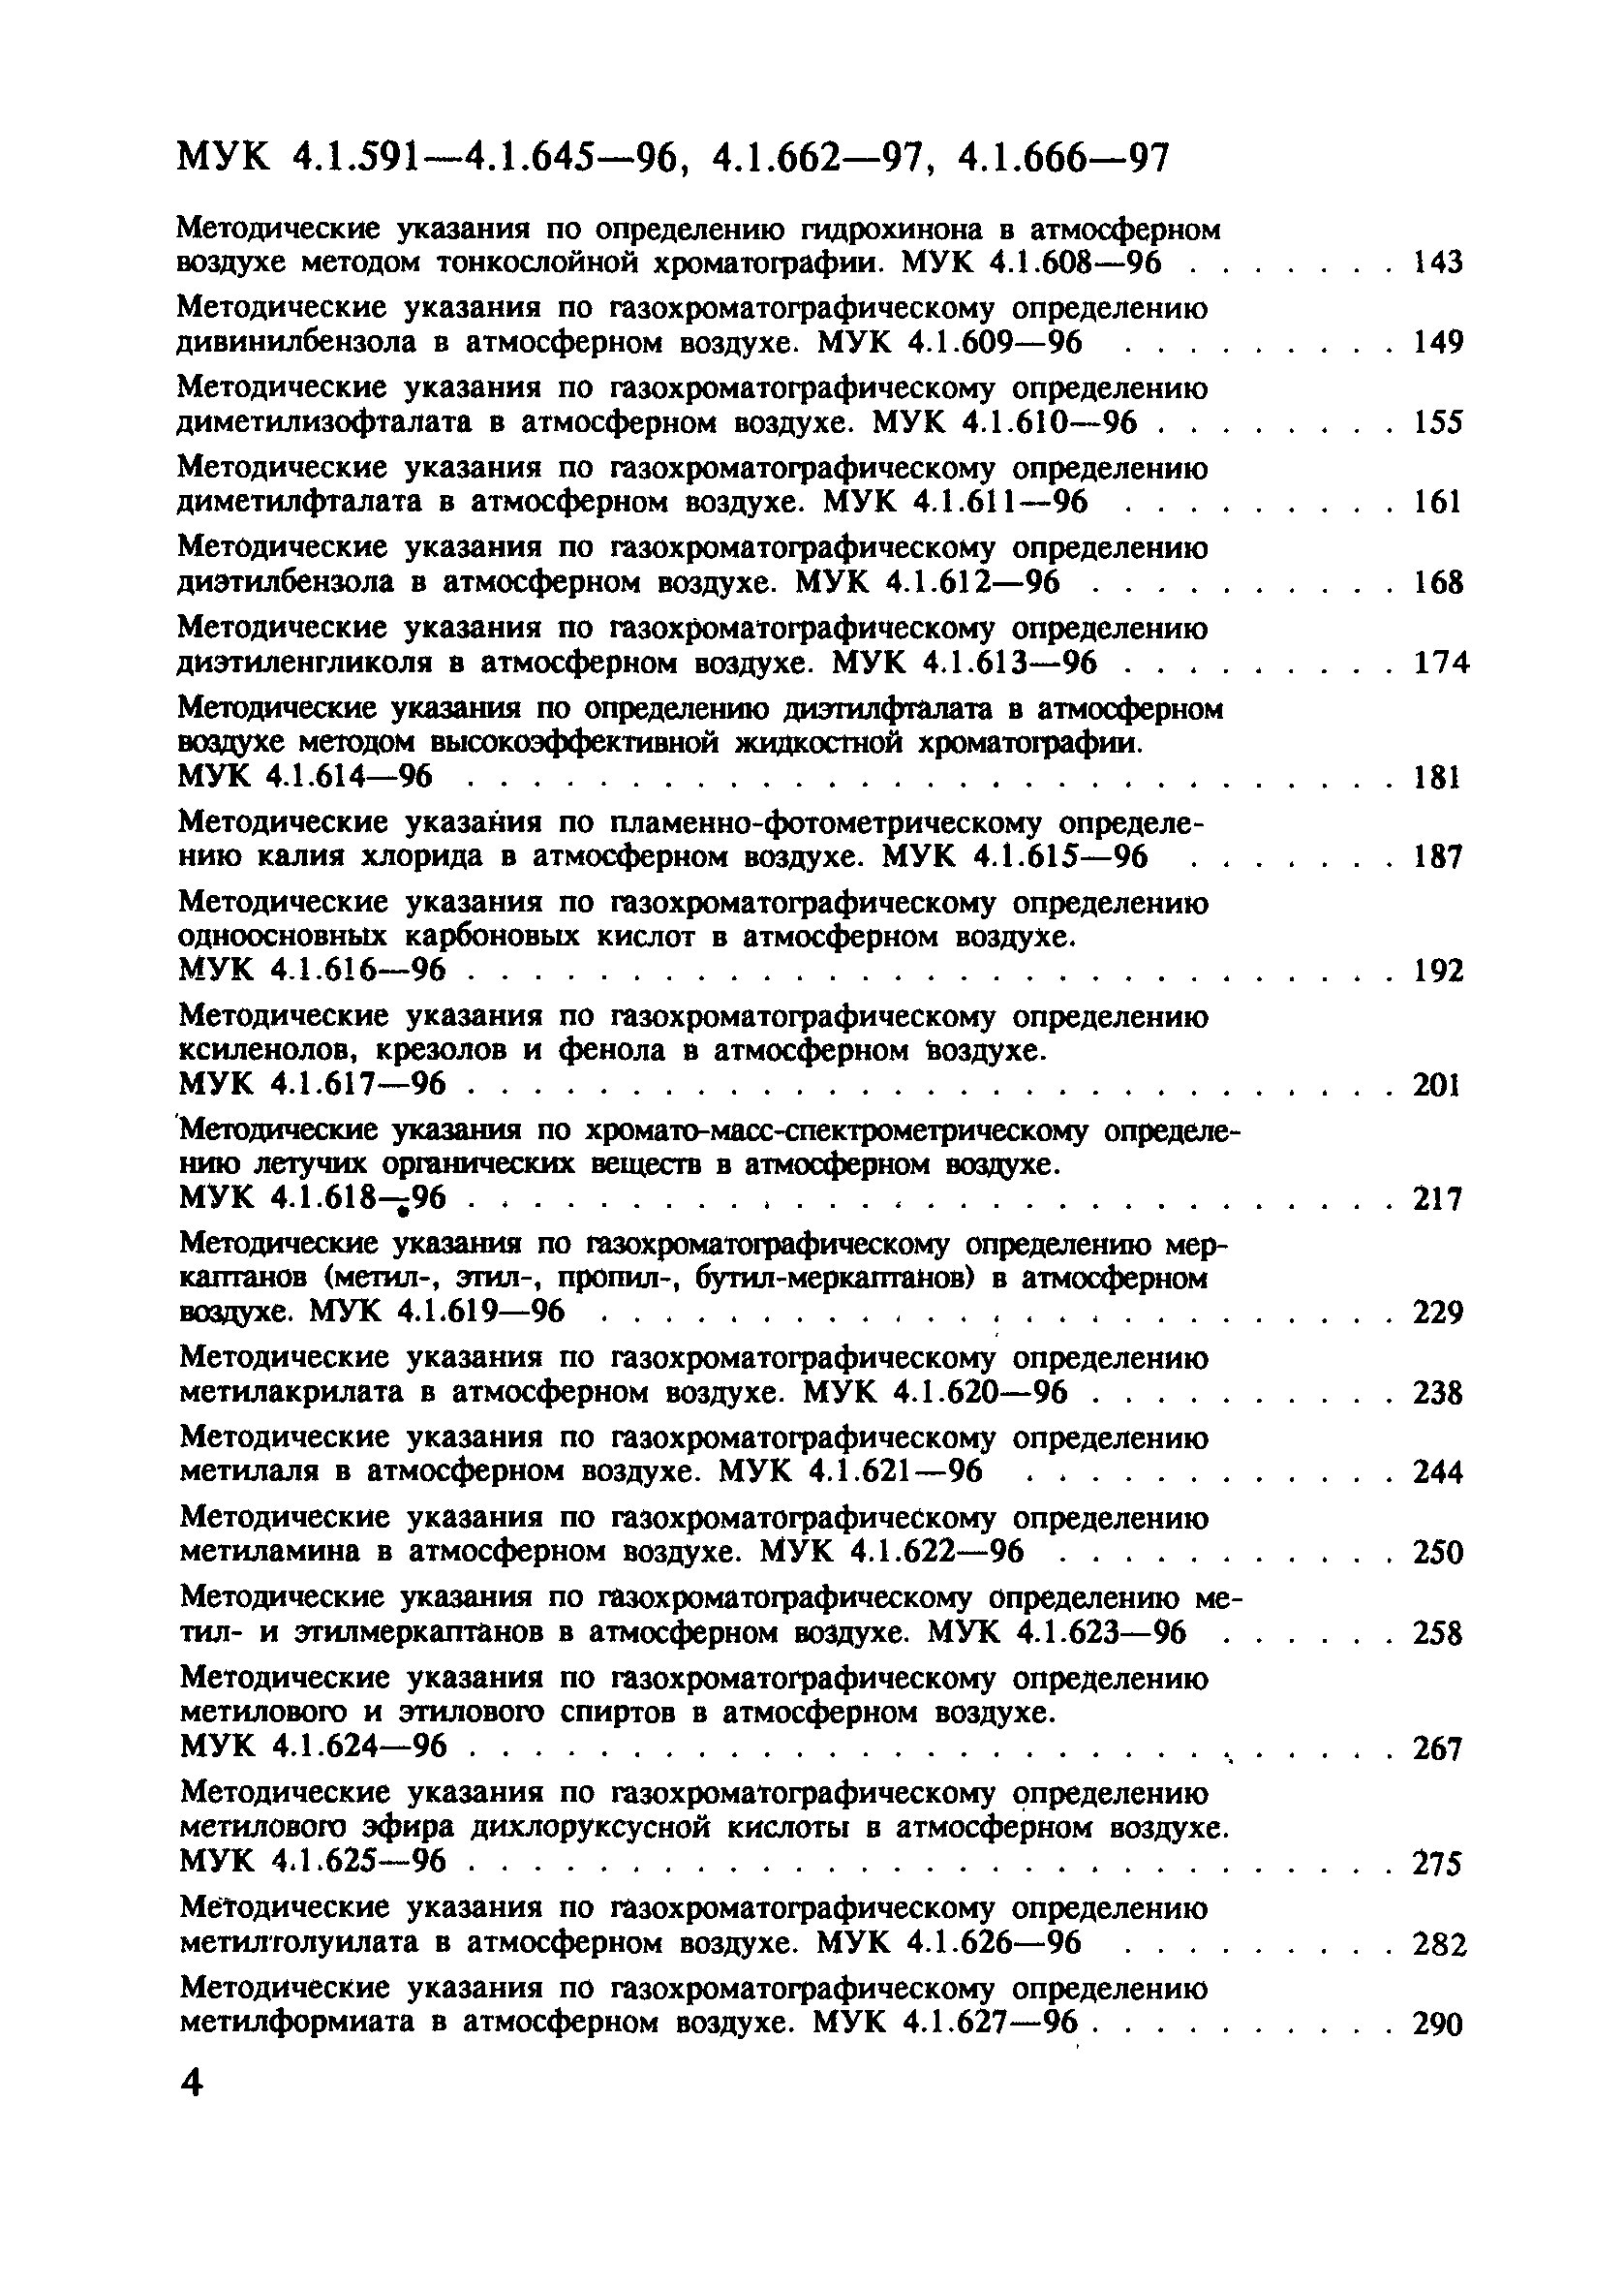 МУК 4.1.604-96